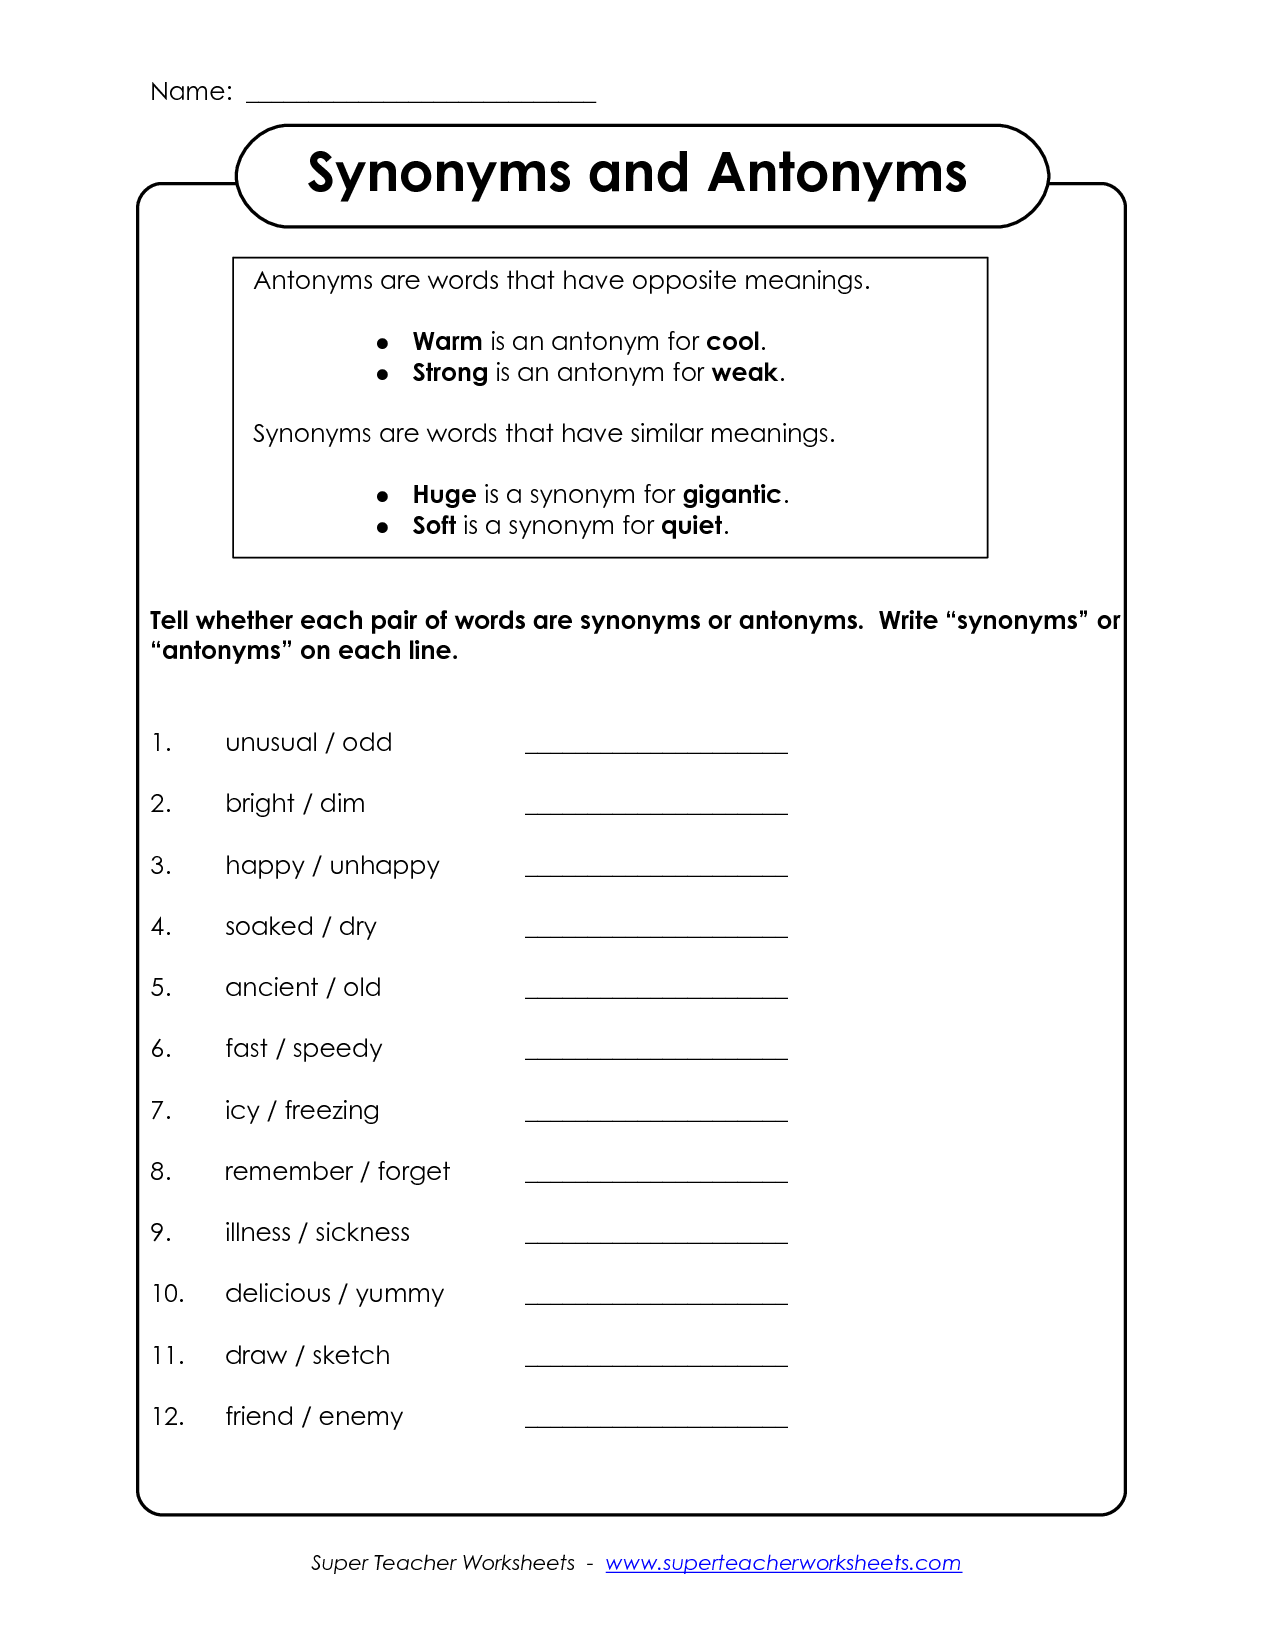 15 Synonym Antonym Worksheets Worksheeto